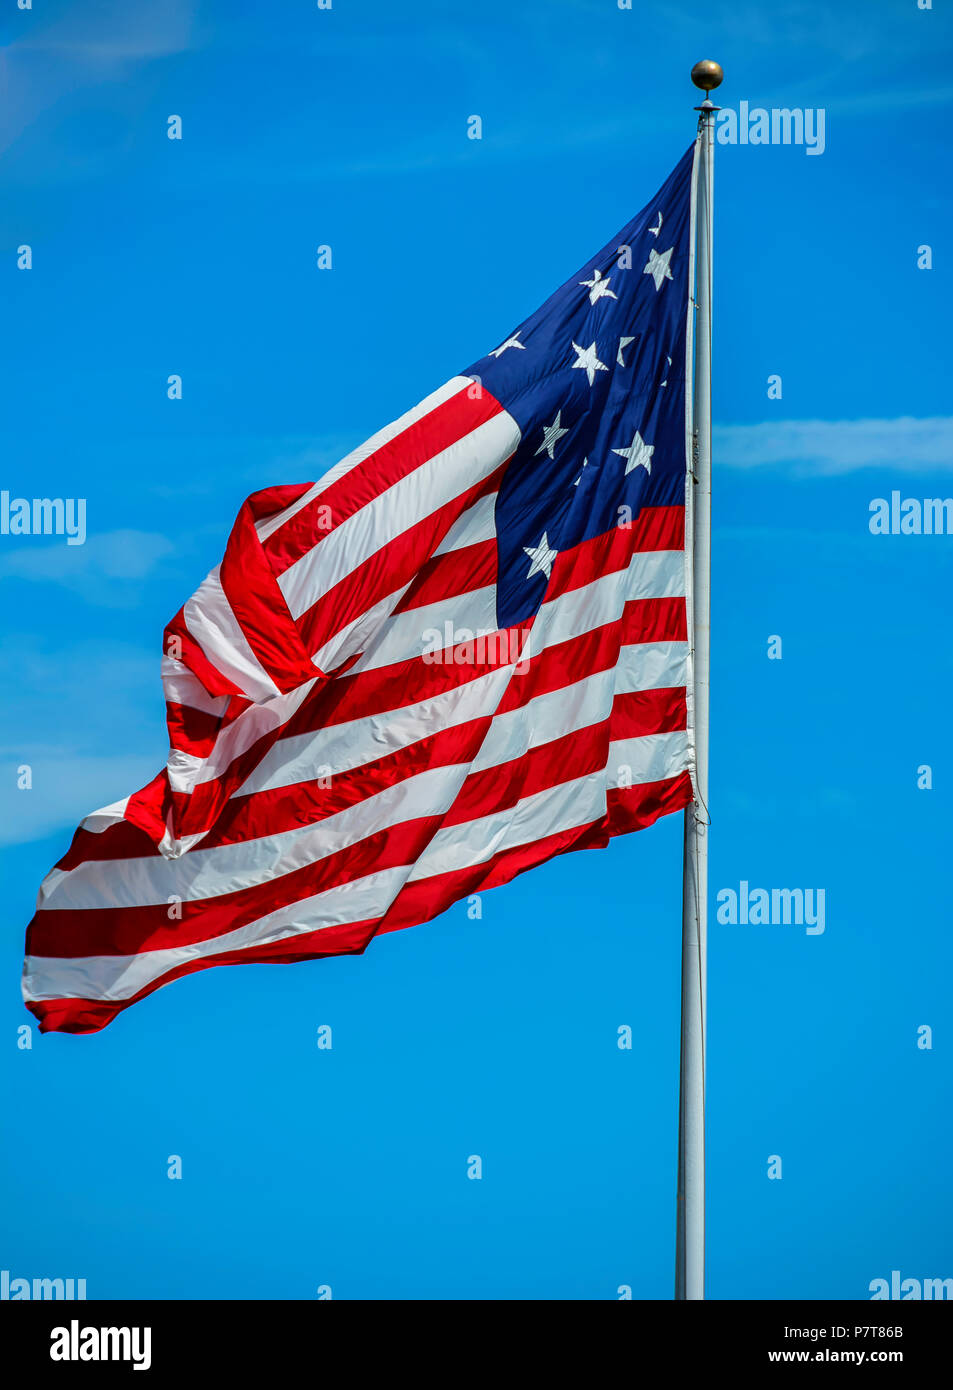 Une photographie d'un drapeau américain très grand volant haut le beau jour. Banque D'Images